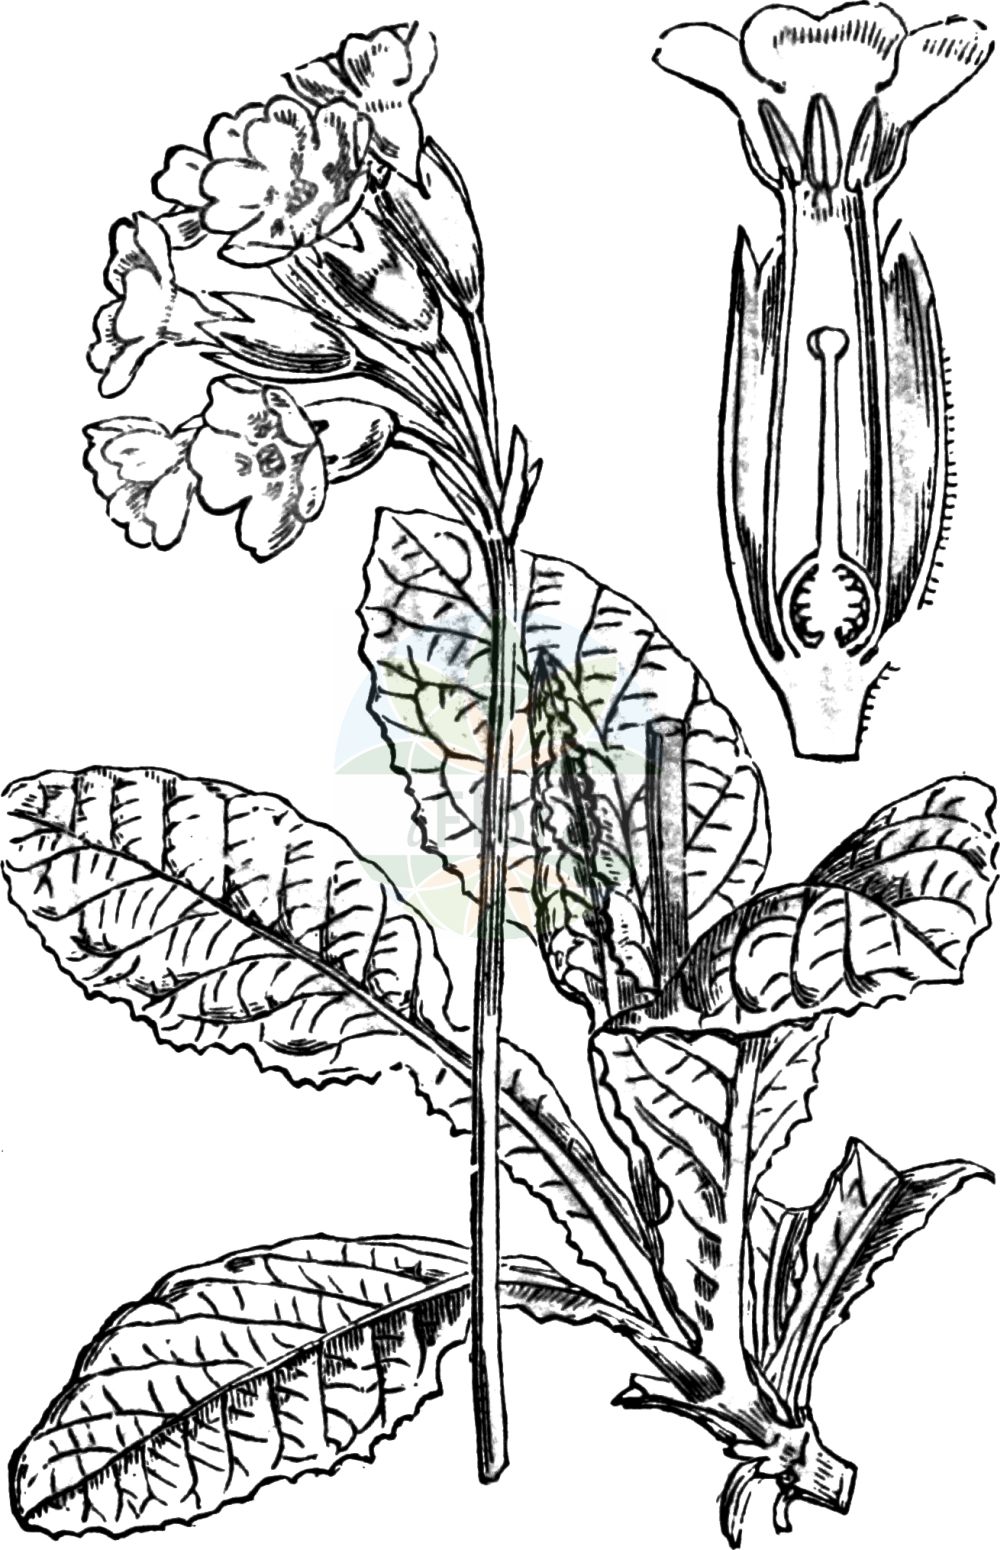 Historische Abbildung von Primula veris (Echte Schlüsselblume - Cowslip). Das Bild zeigt Blatt, Bluete, Frucht und Same. ---- Historical Drawing of Primula veris (Echte Schlüsselblume - Cowslip). The image is showing leaf, flower, fruit and seed.(Primula veris,Echte Schlüsselblume,Cowslip,Primula officinalis,Primula veris,Primula veris var. officinalis,Echte Schluesselblume,Duftende Schluesselblume,Echte Primel,Erd-Primel,Fruehlings-Schluesselblume,Gewoehnliche Wiesen-Schluesselblume,Himmelschluessel,Wiesen-Primel,Wiesen-Schluesselblume,Cowslip,Cowslip Primrose,Primula,Schlüsselblume,Primrose,Primulaceae,Schlüsselblumengewächse,Primrose family,Blatt,Bluete,Frucht,Same,leaf,flower,fruit,seed,Fitch et al. (1880))